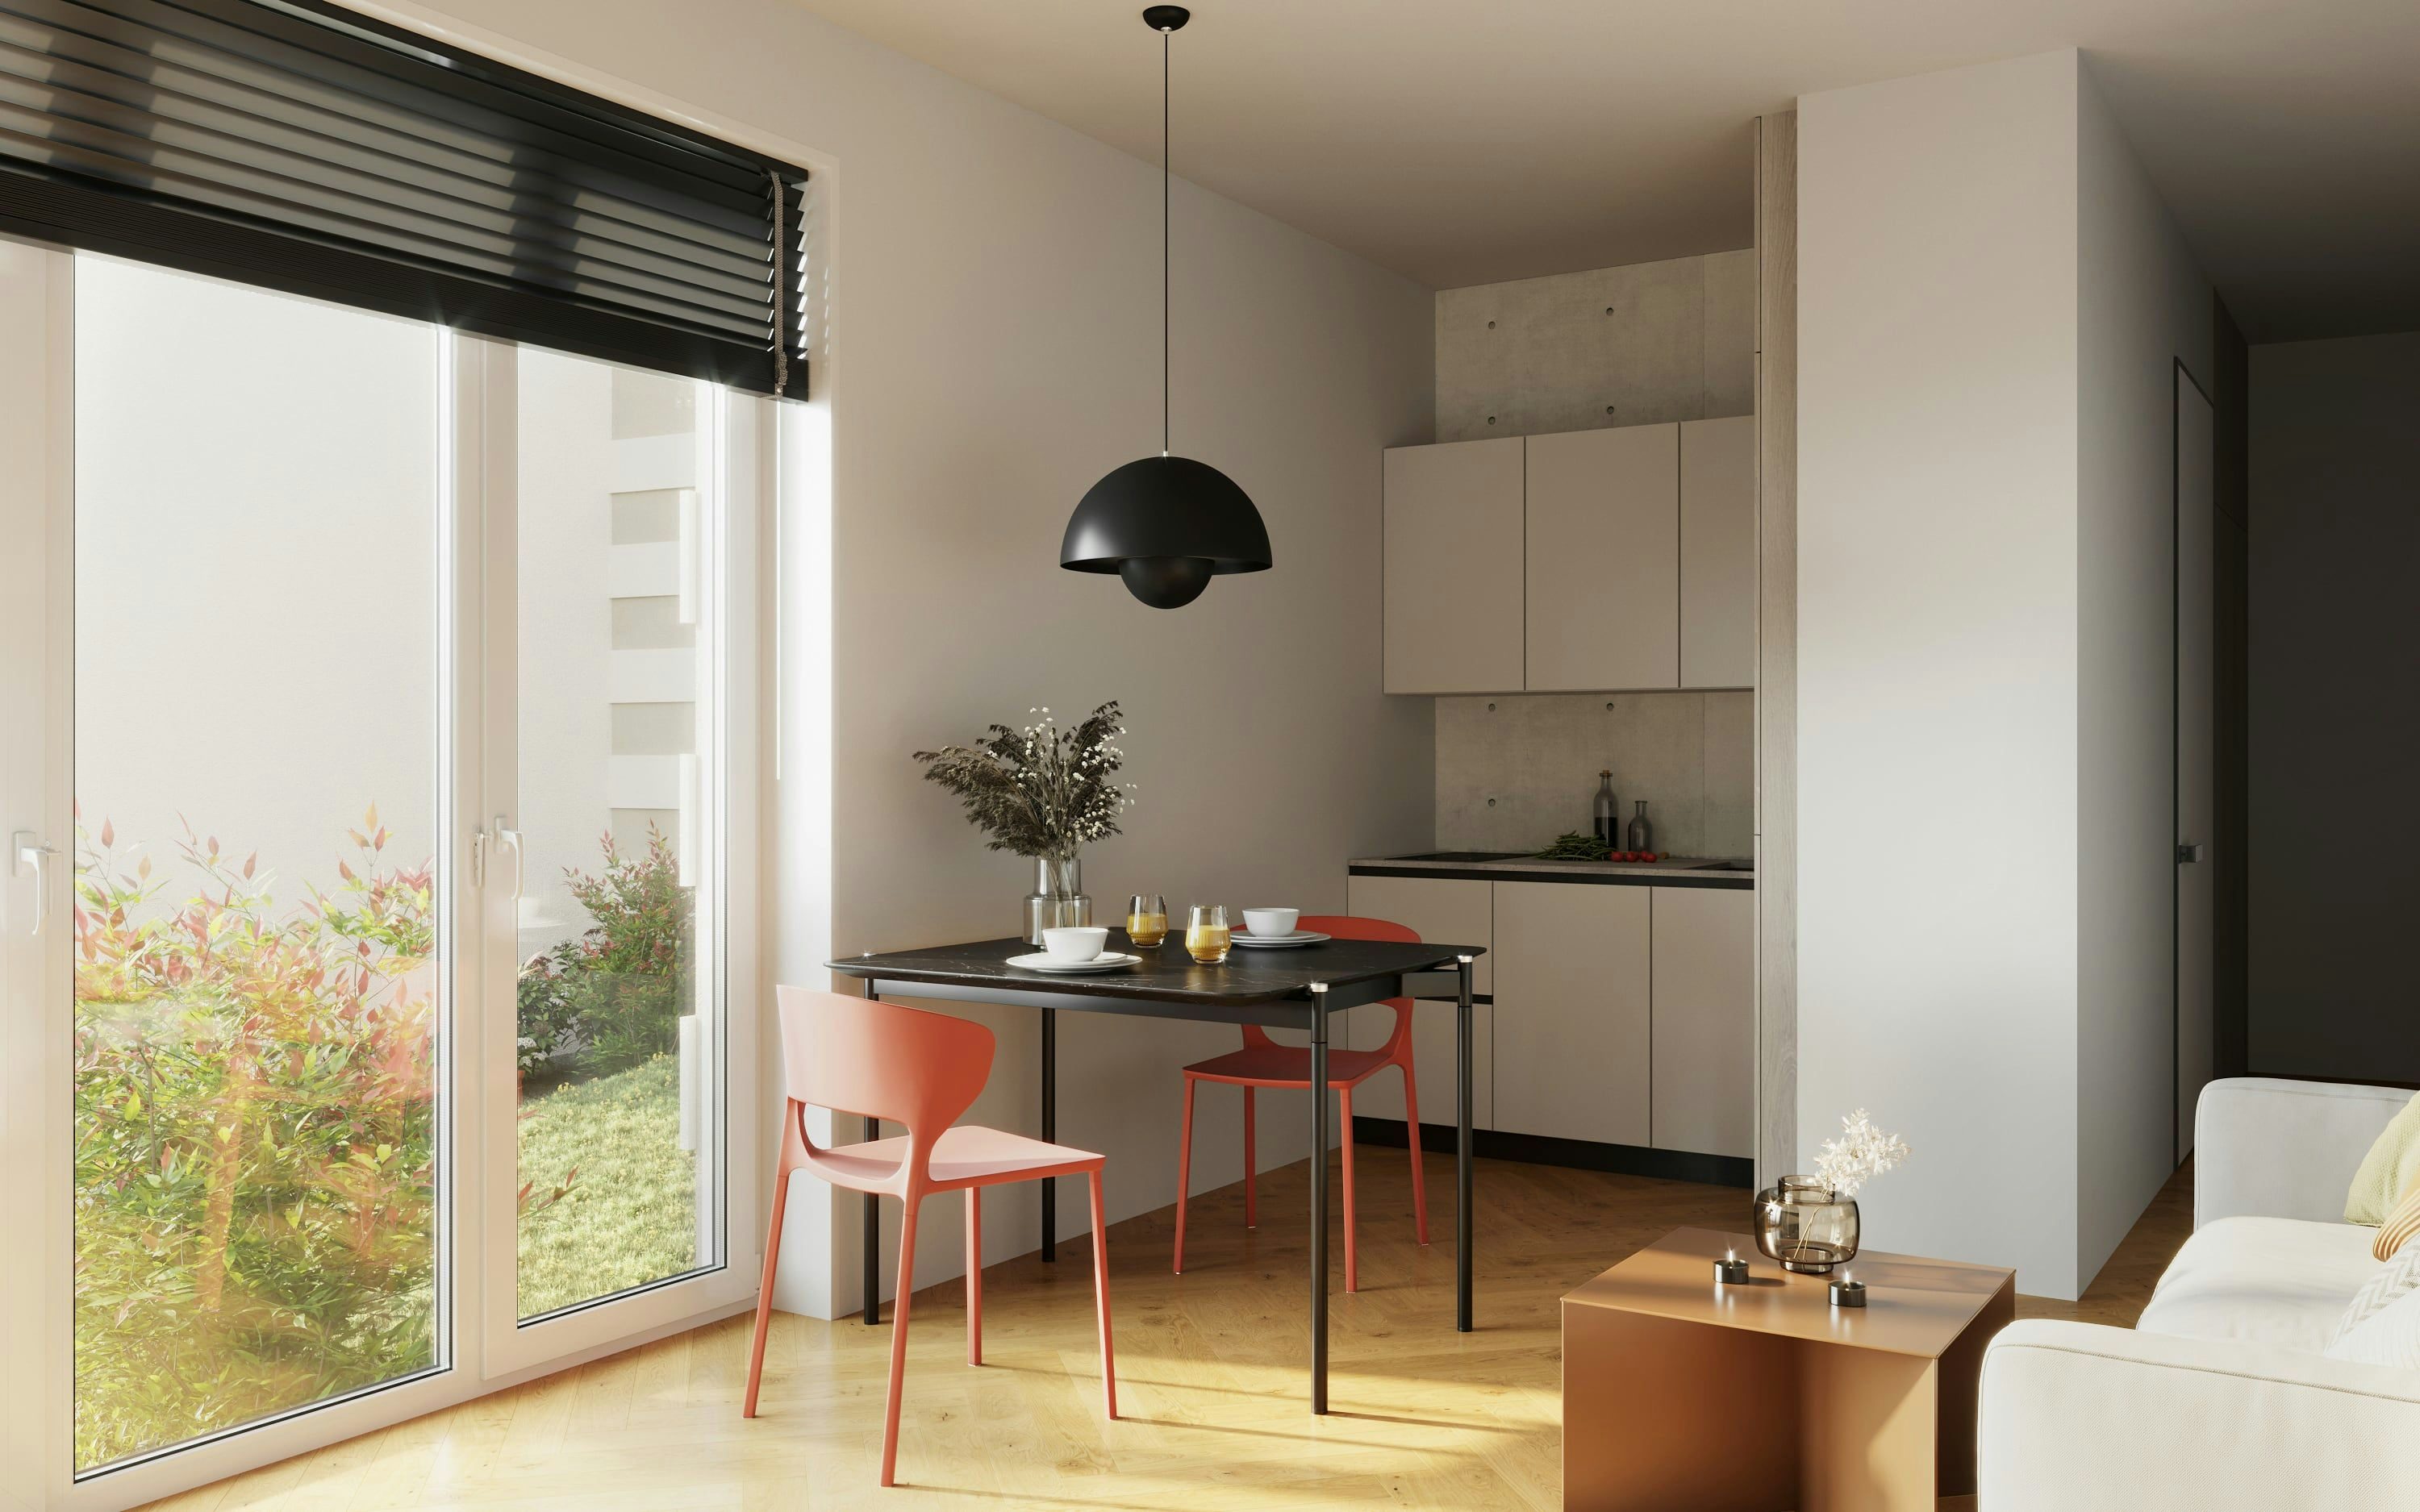 3D Innenvisualisierung einer Küche mit Essbereich und Wohnbereich in einer kleinen Wohnung in der Hindenburgstraße Erlangen, Deutschland